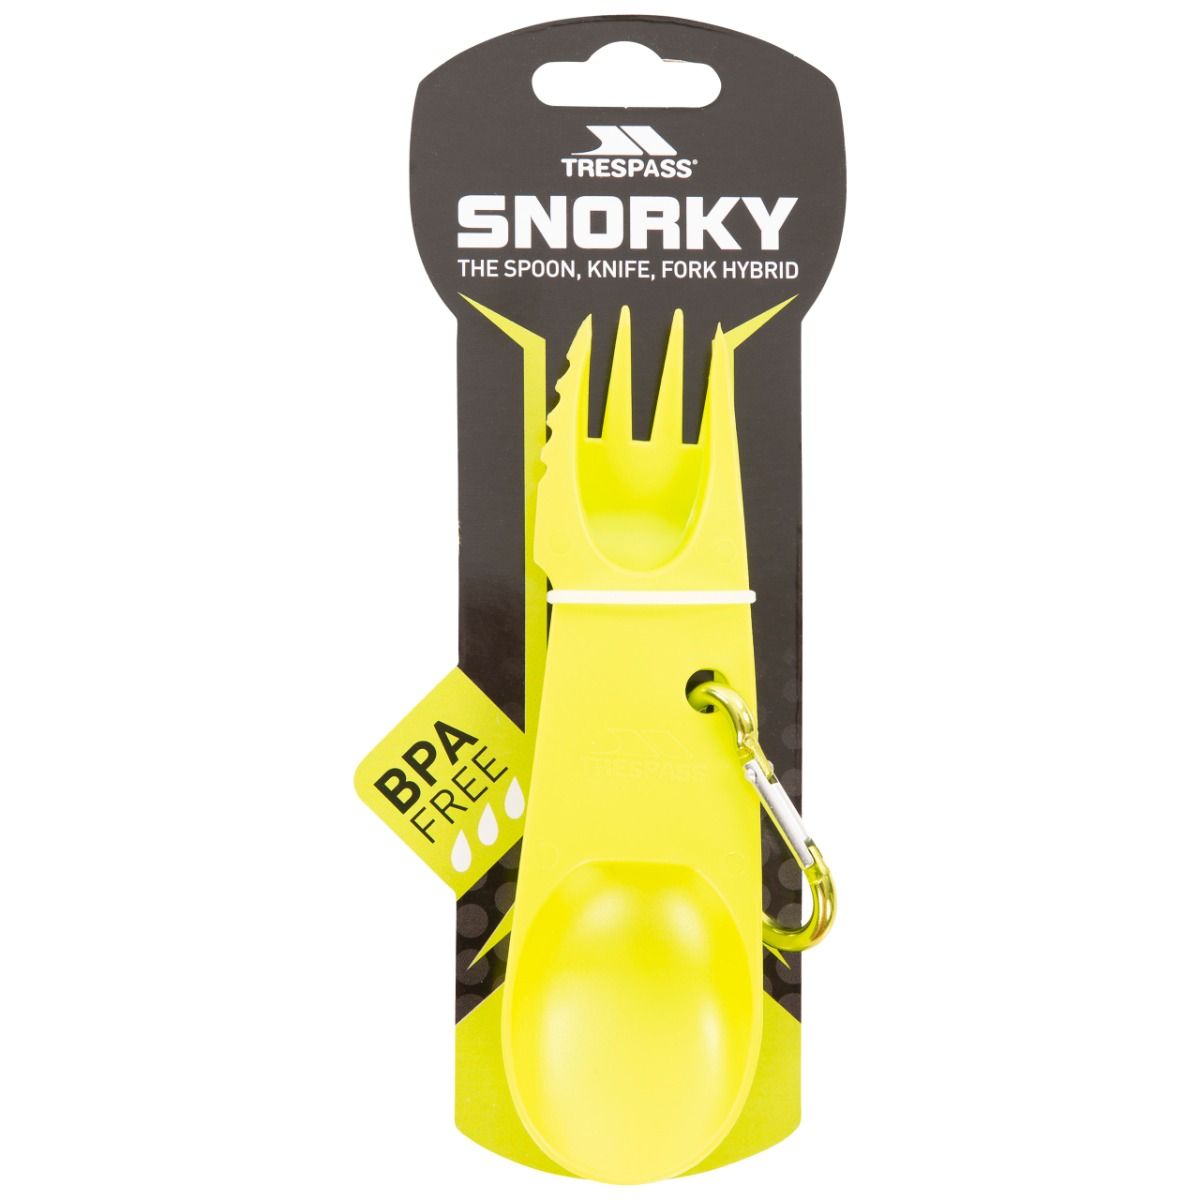 Snorky 3-in-1 Camping Utensil